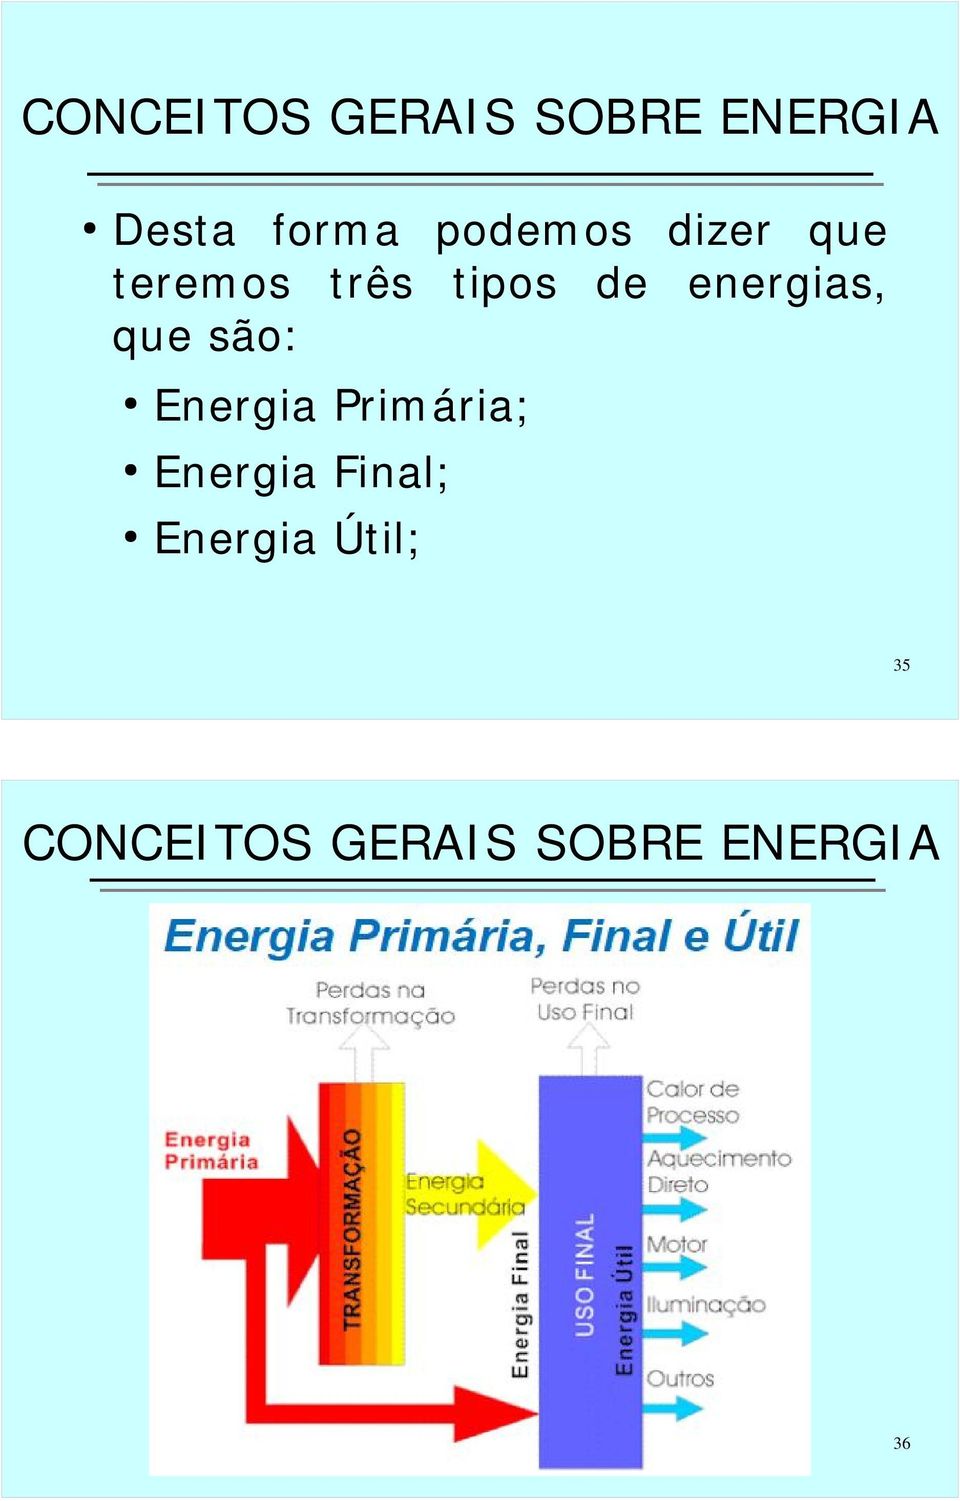 energias, que são: Energia Primária; Energia